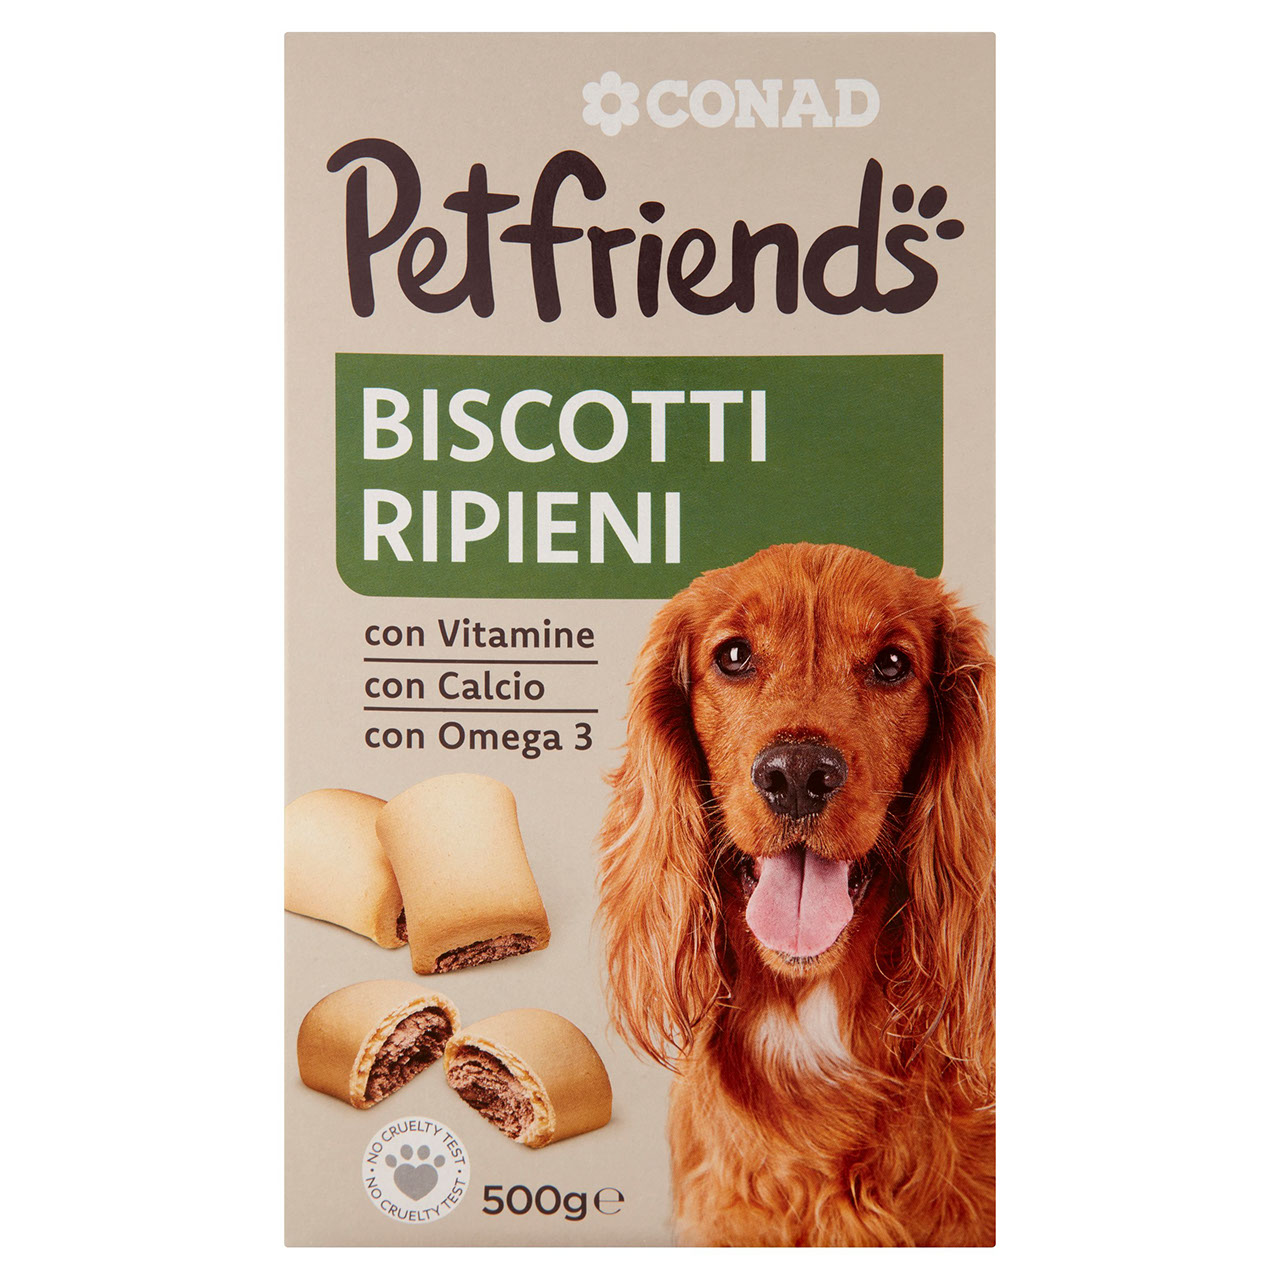 Petfriends Biscotti Ripieni 500 g Conad online